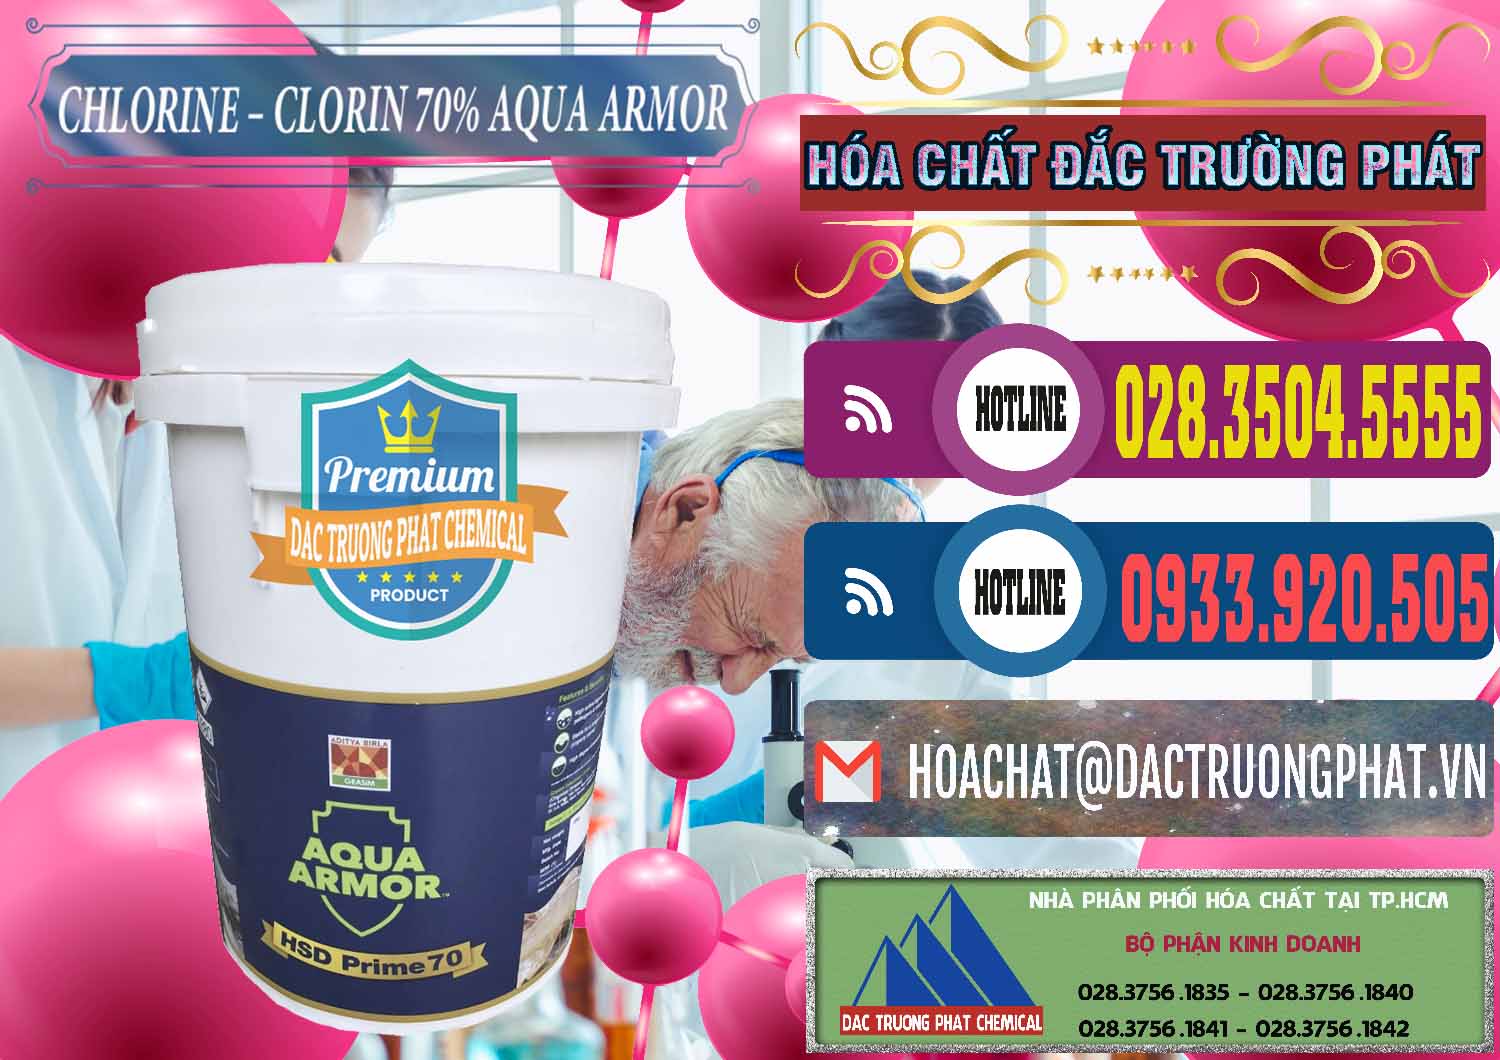 Công ty bán ( phân phối ) Chlorine – Clorin 70% Aqua Armor Aditya Birla Grasim Ấn Độ India - 0241 - Cty phân phối _ kinh doanh hóa chất tại TP.HCM - muabanhoachat.com.vn